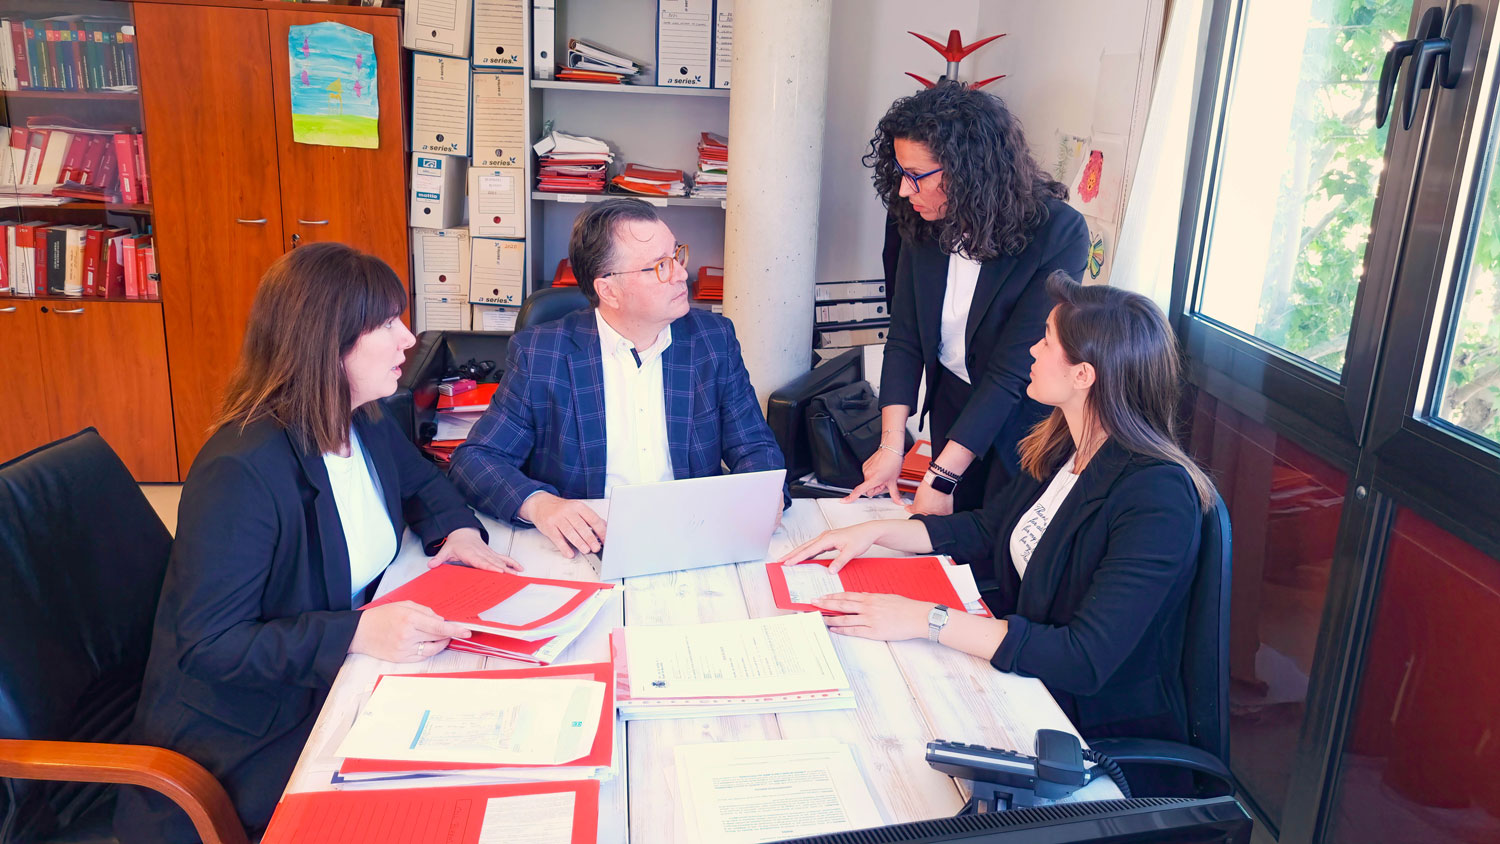 el equipo de Assessoria Florit reunido en una mesa con documentación de los clientes, coordinando el trabajo